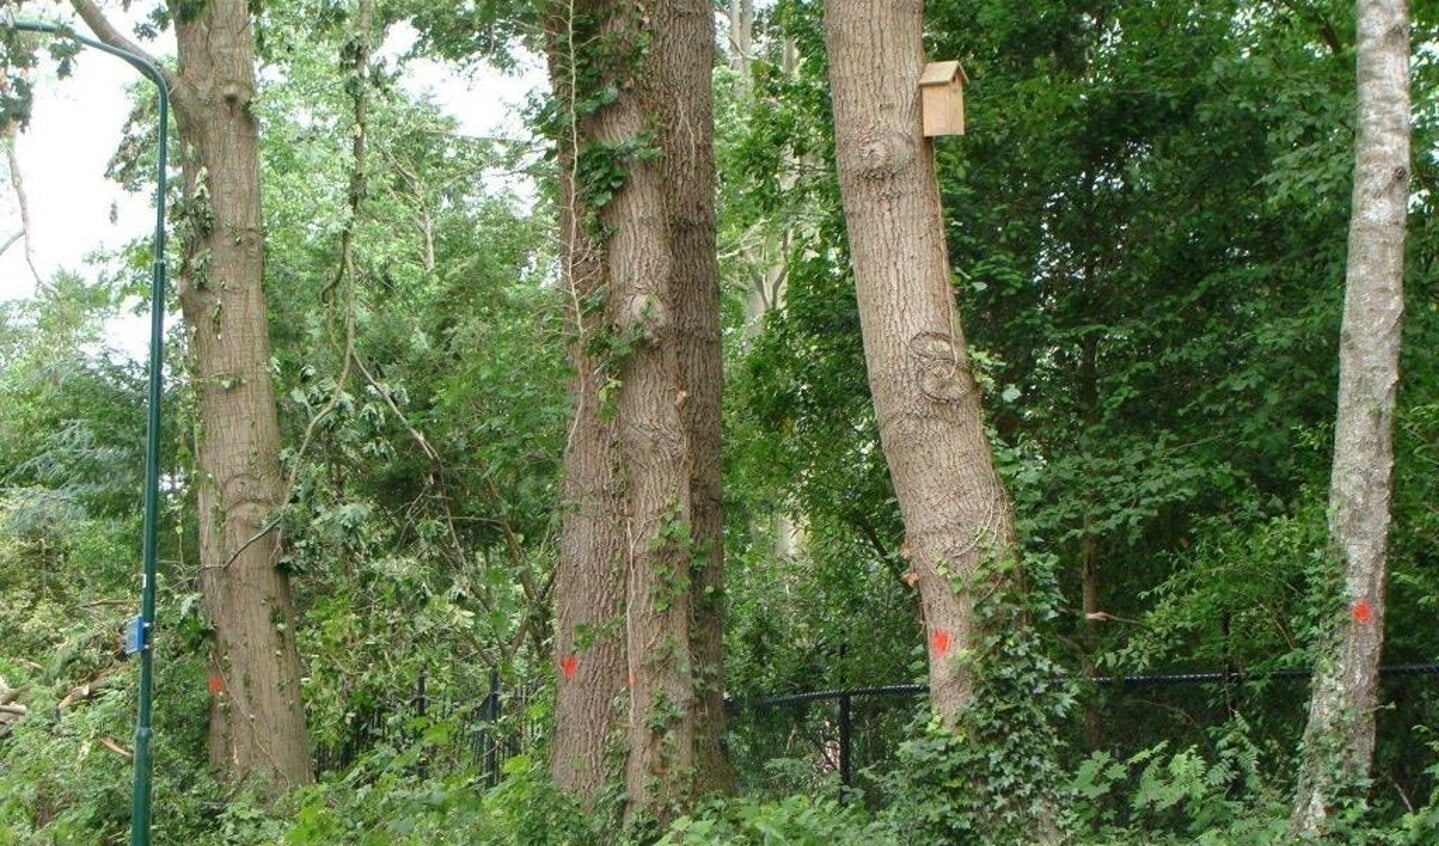 De rode stippen waarmee de bomen zijn gemarkeerd tekenen de te kappen bomen.